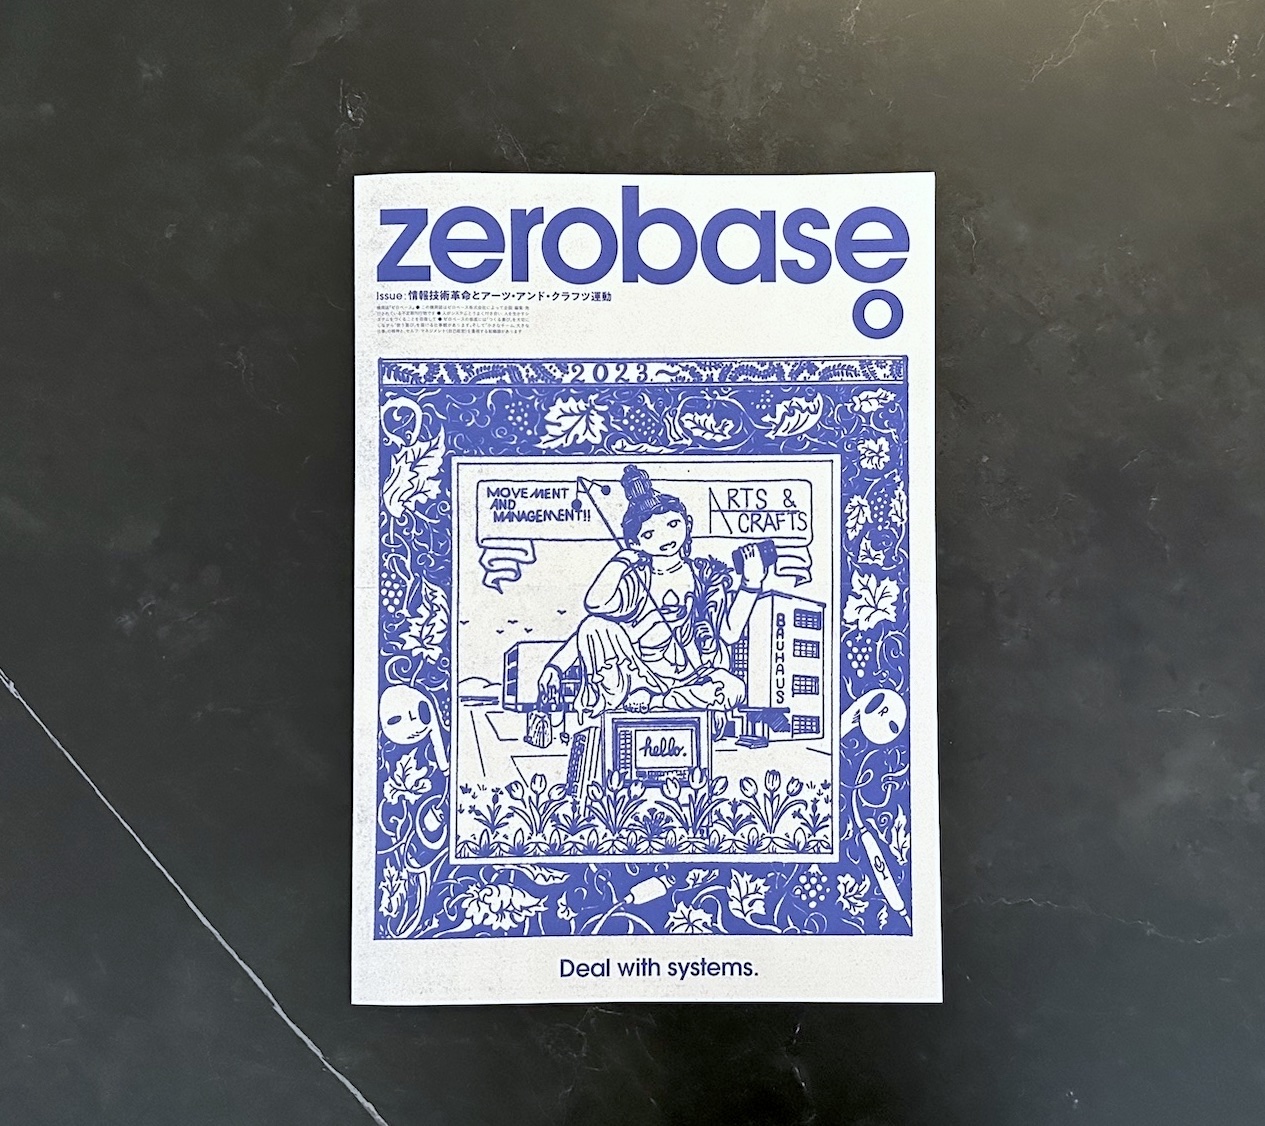 機関誌の表紙の写真：タイトル「zerobase 0」、サブタイトル「情報技術革命とアーツ・アンド・クラフツ運動」、タグライン「Deal with systems.」およびカバーアートが掲載されている